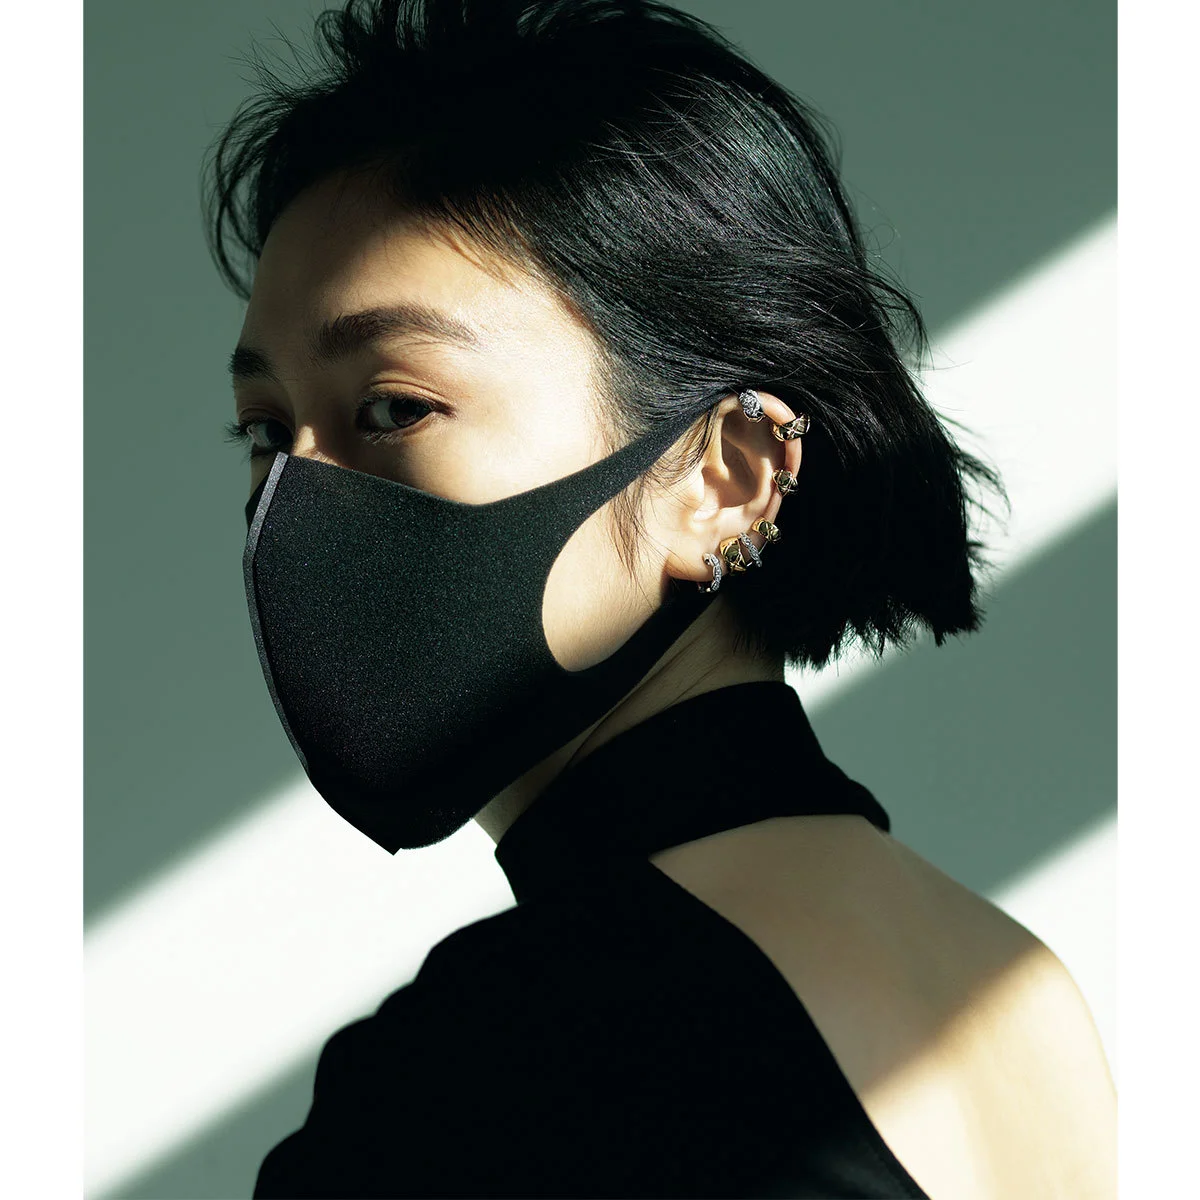 マスク時代に、華やかに横顔を照らす「美人ピアス」 | ファッション誌